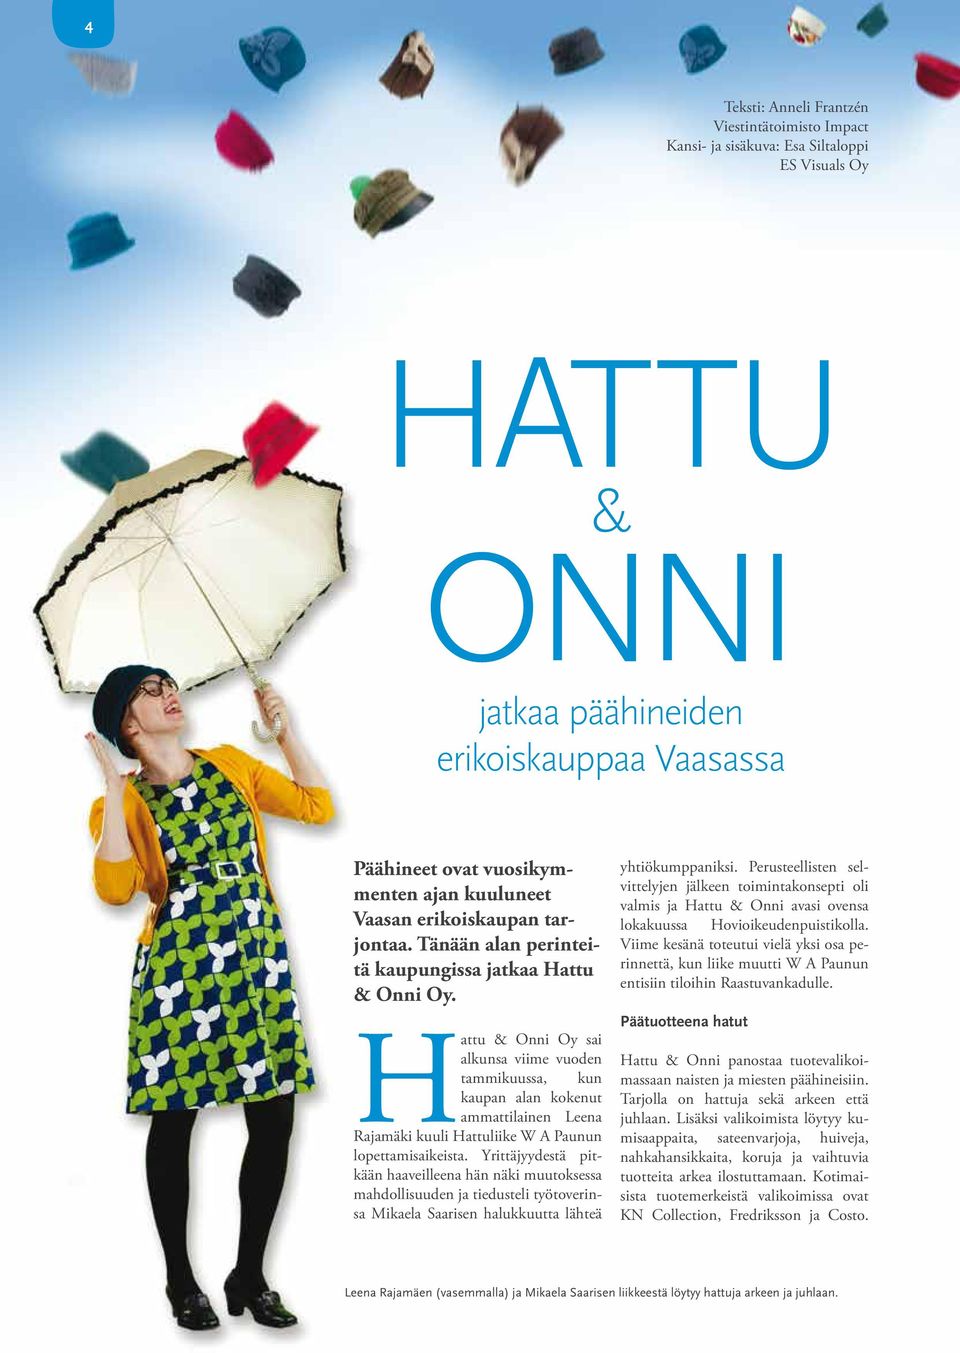 Hattu & Onni Oy sai alkunsa viime vuoden tammikuussa, kun kaupan alan kokenut ammattilainen Leena Rajamäki kuuli Hattuliike W A Paunun lopettamisaikeista.